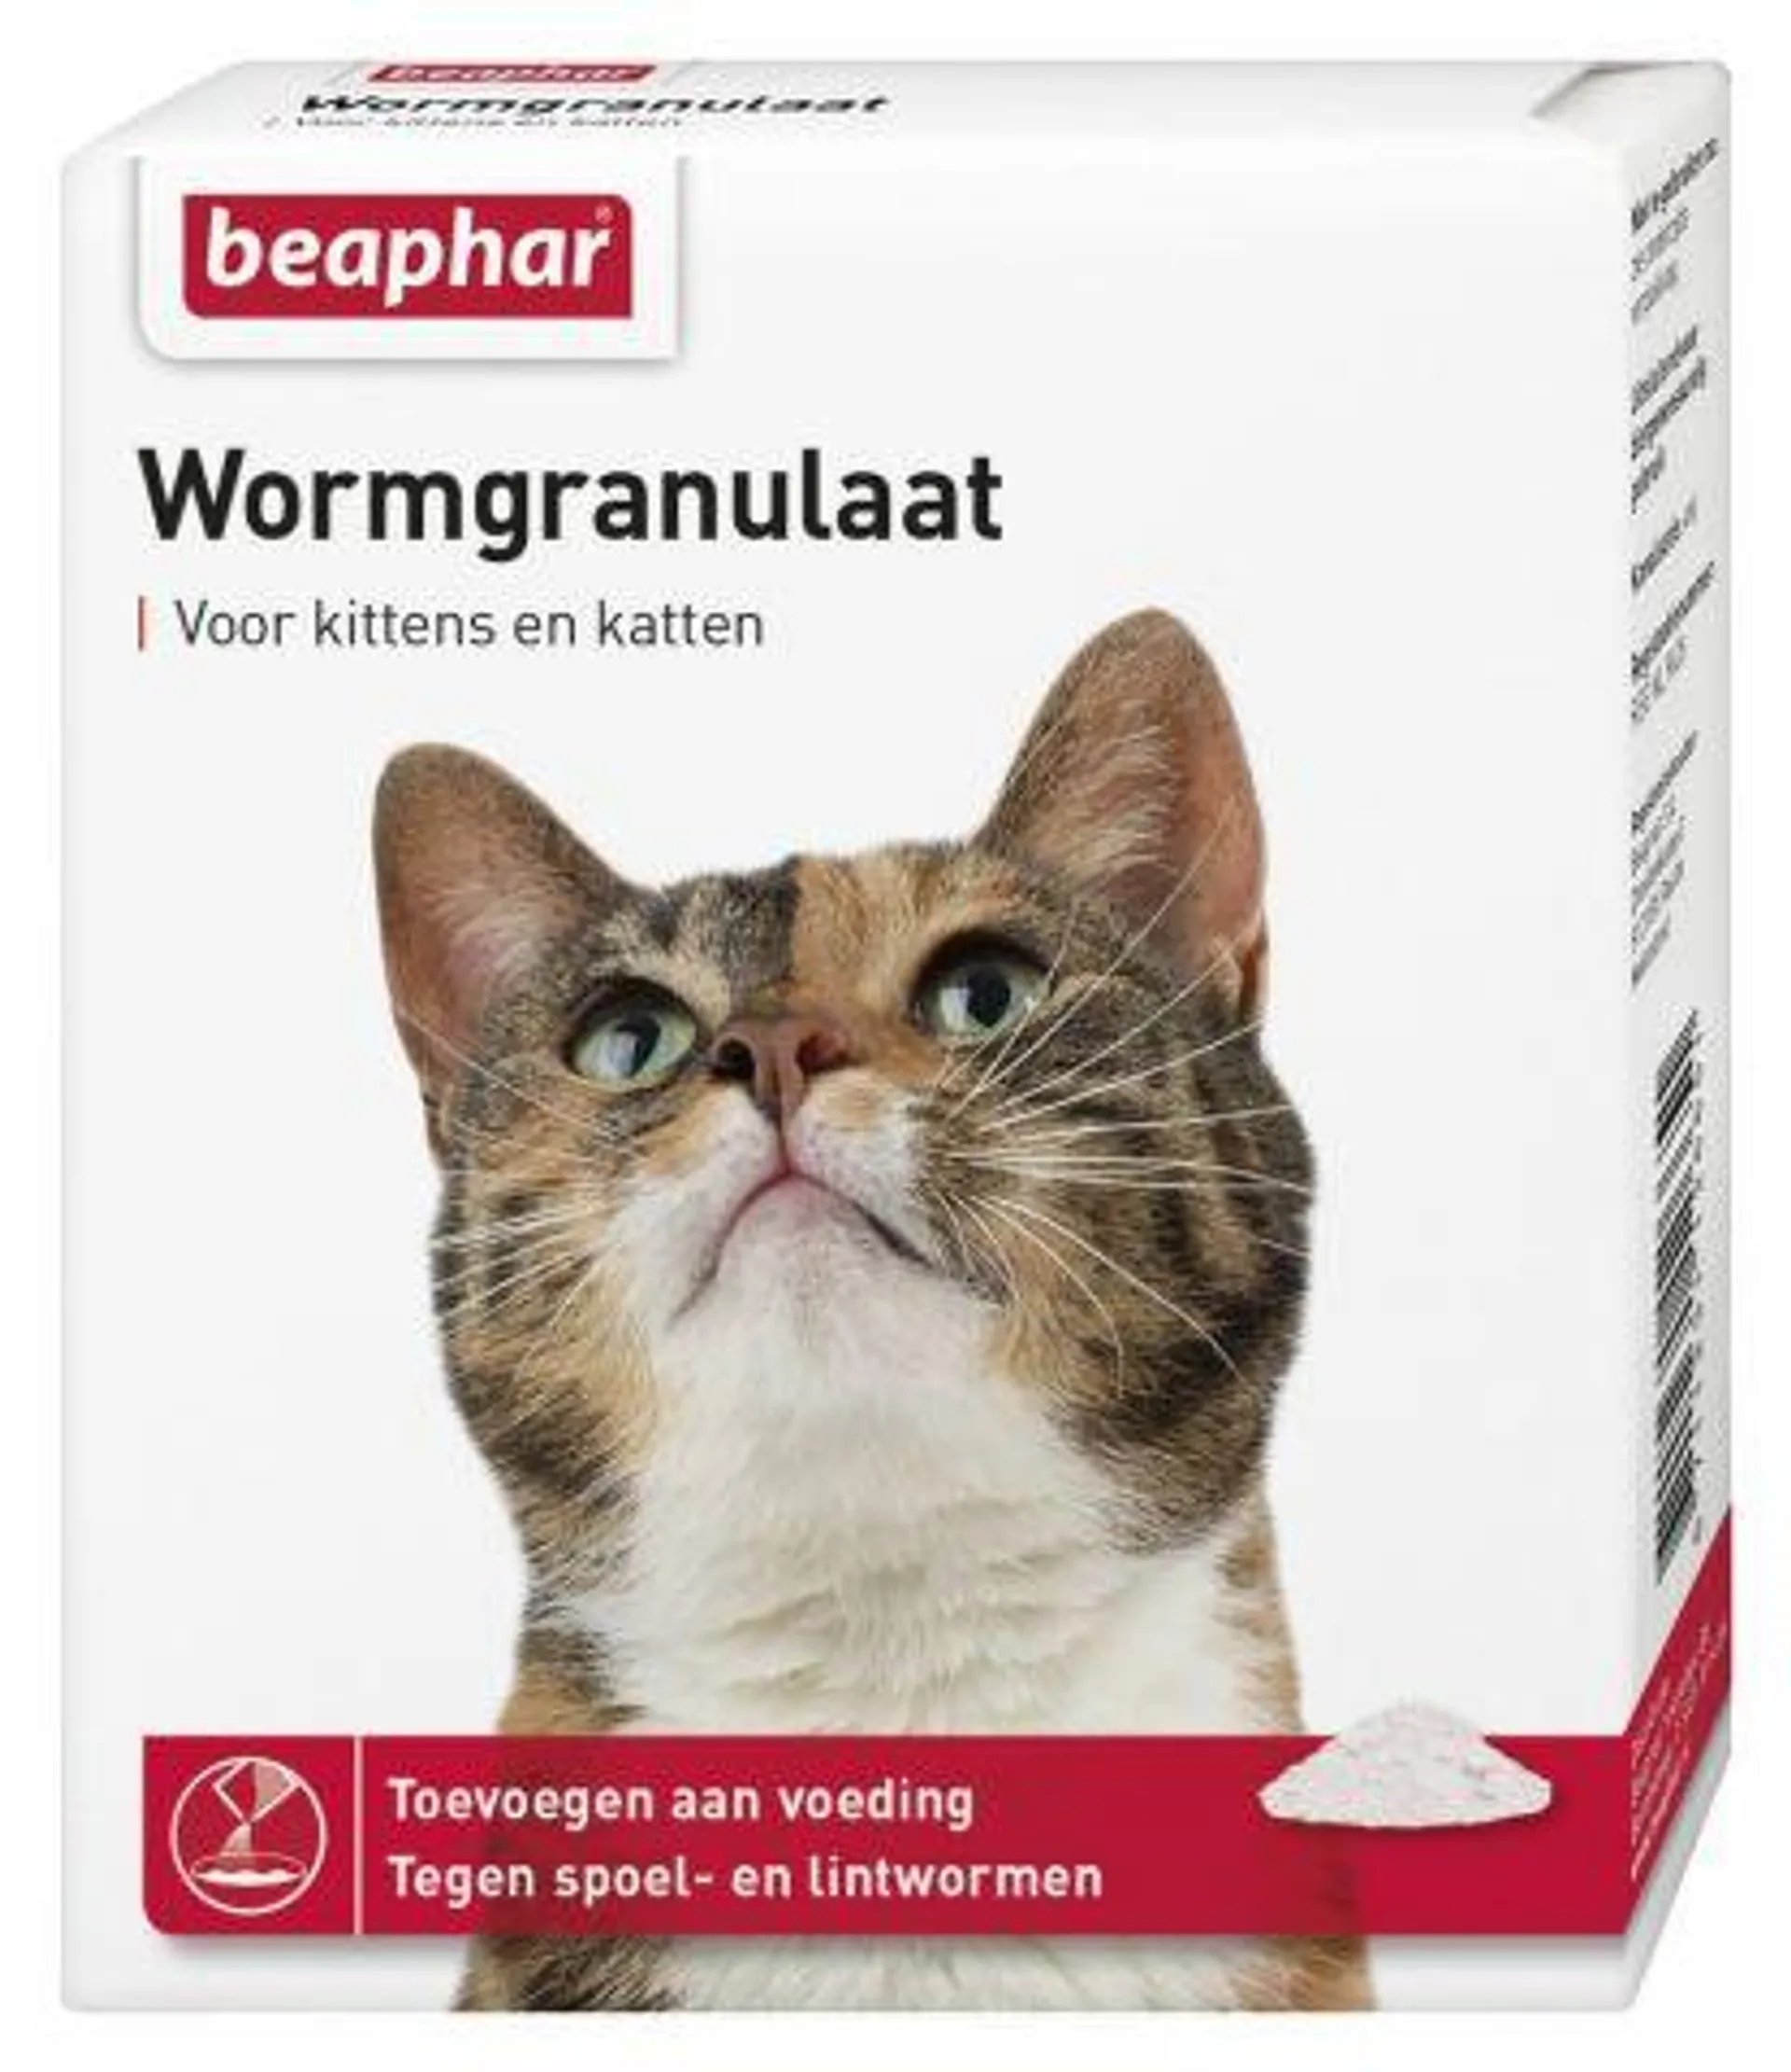 Beaphar - Wormgranulaat kat - 4x1 gram